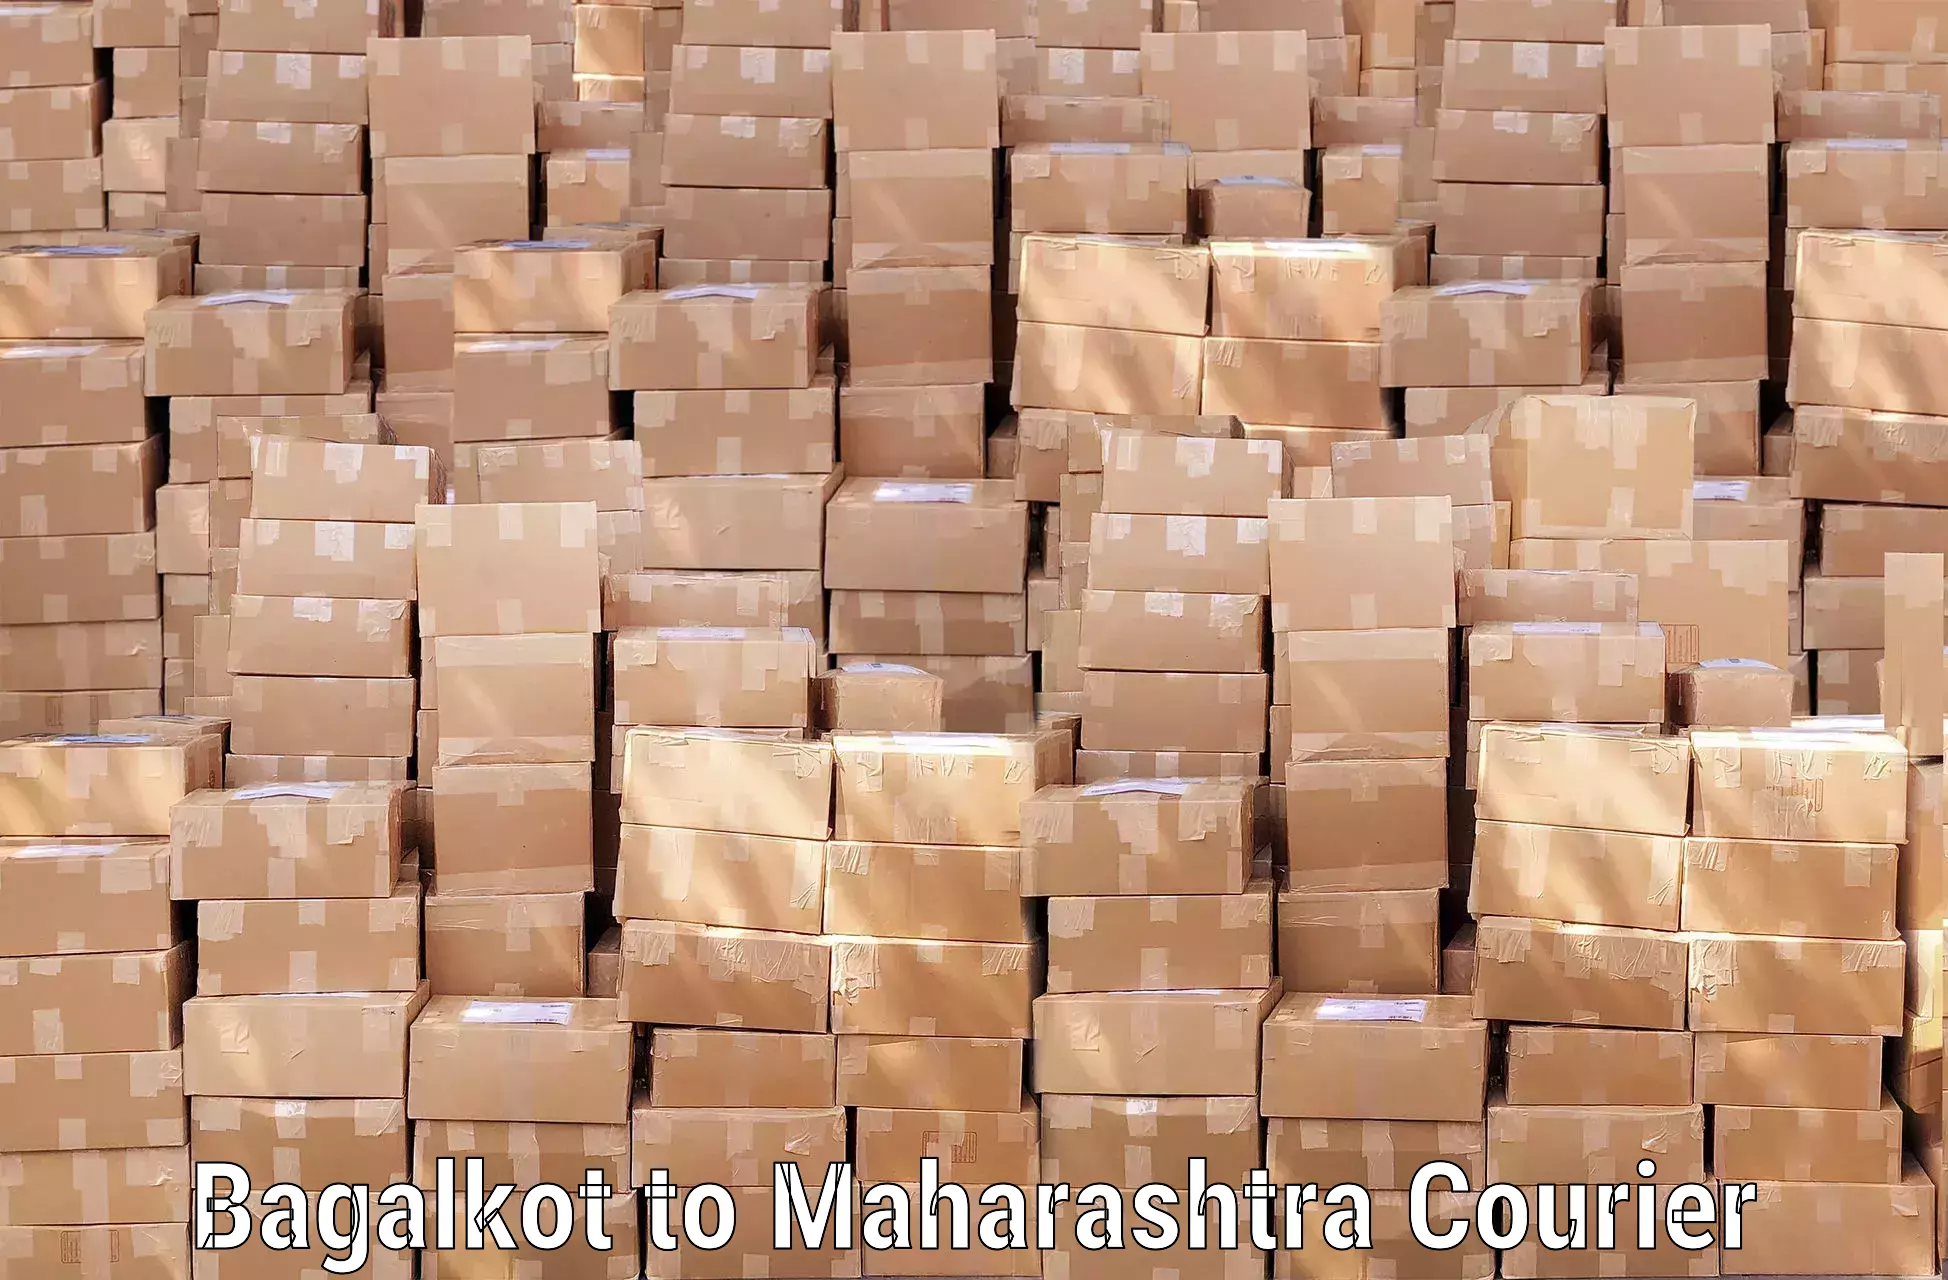 Discounted baggage transport Bagalkot to Maharashtra